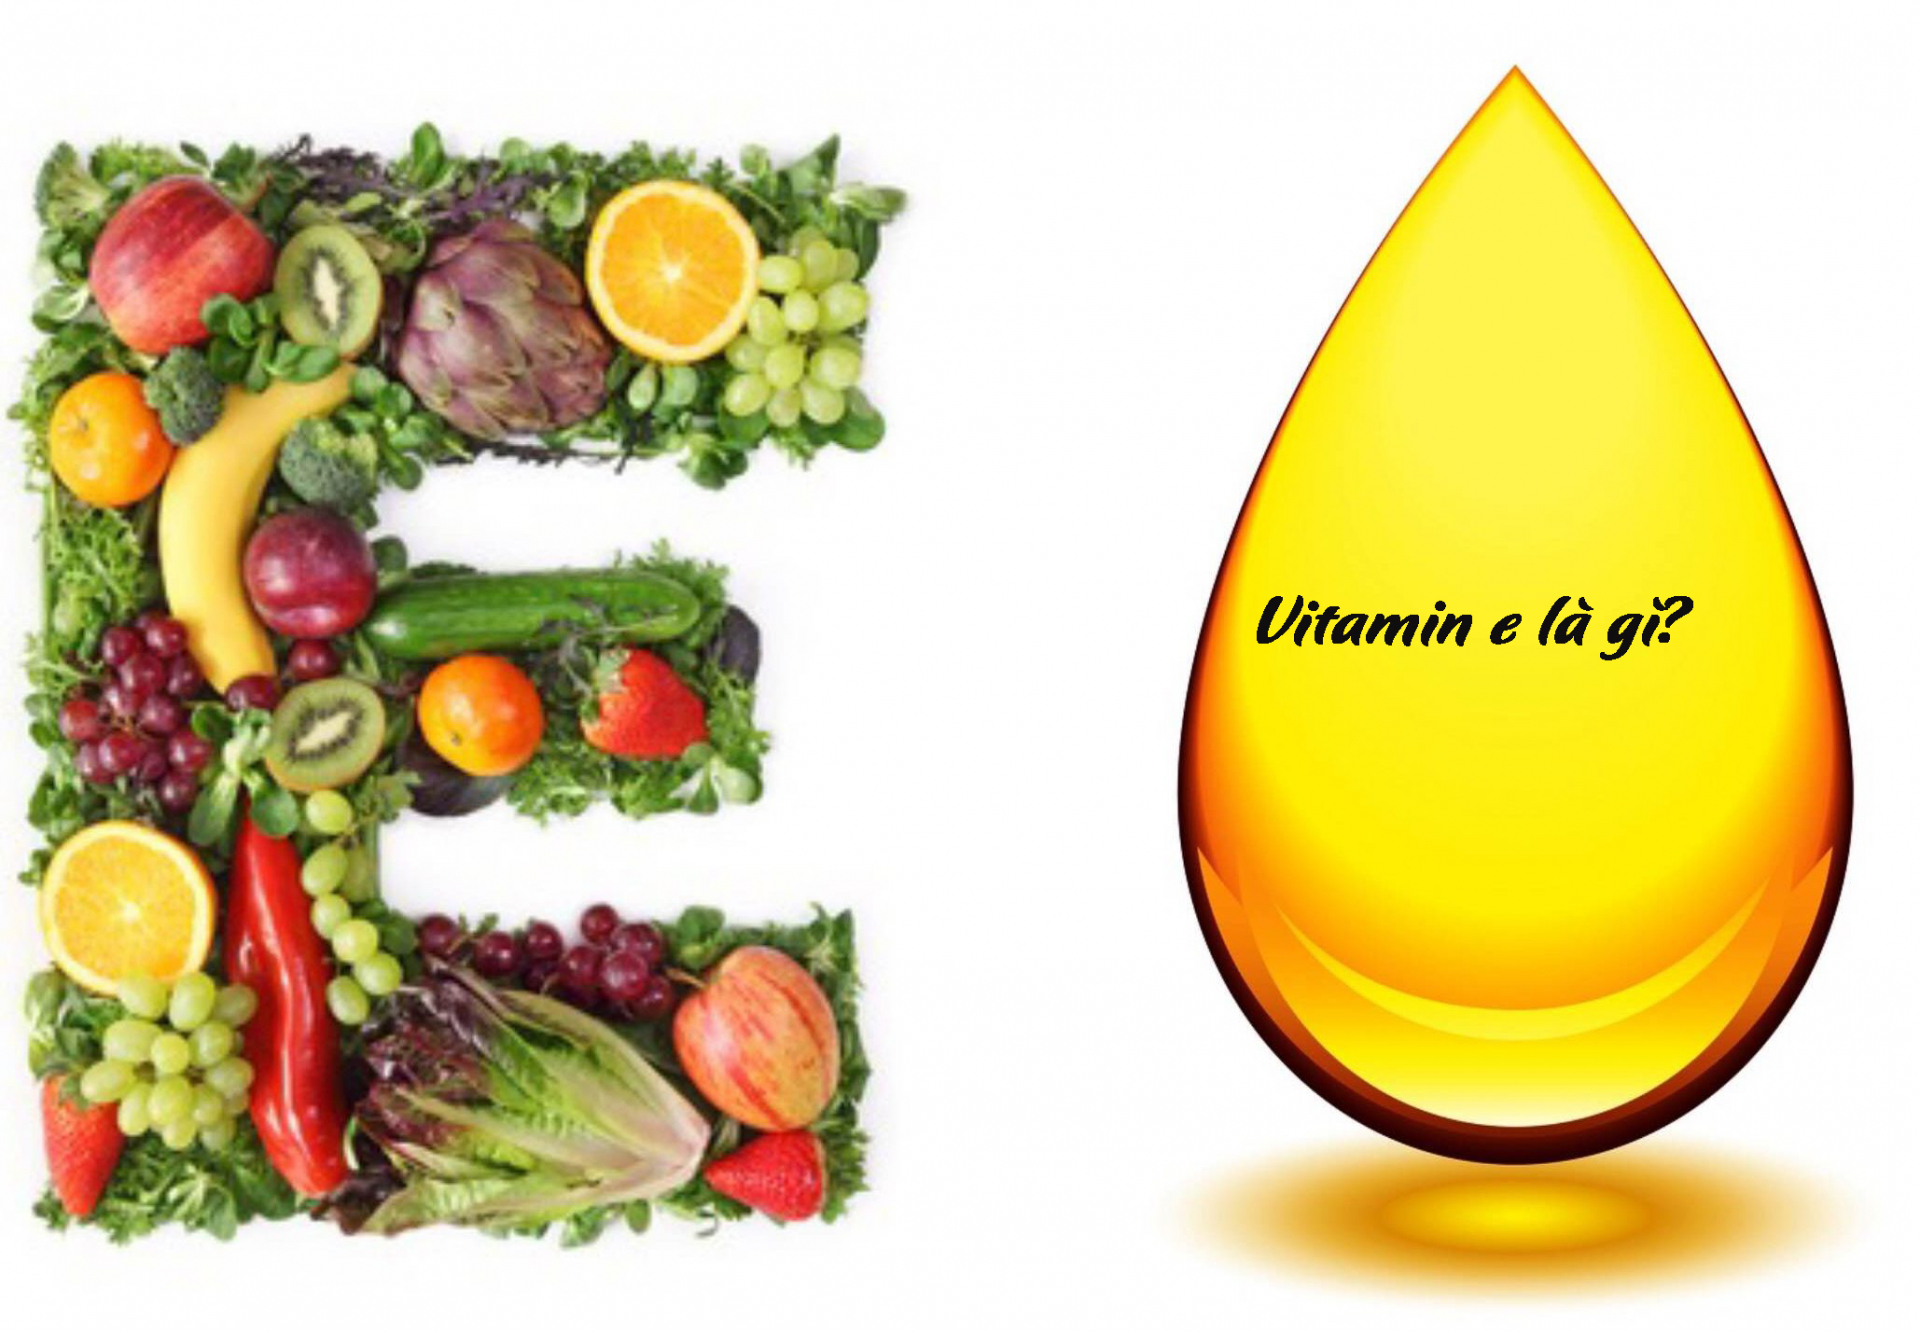 Vitamin E là gì? Vitamin E có tác dụng gì trong dưỡng da?